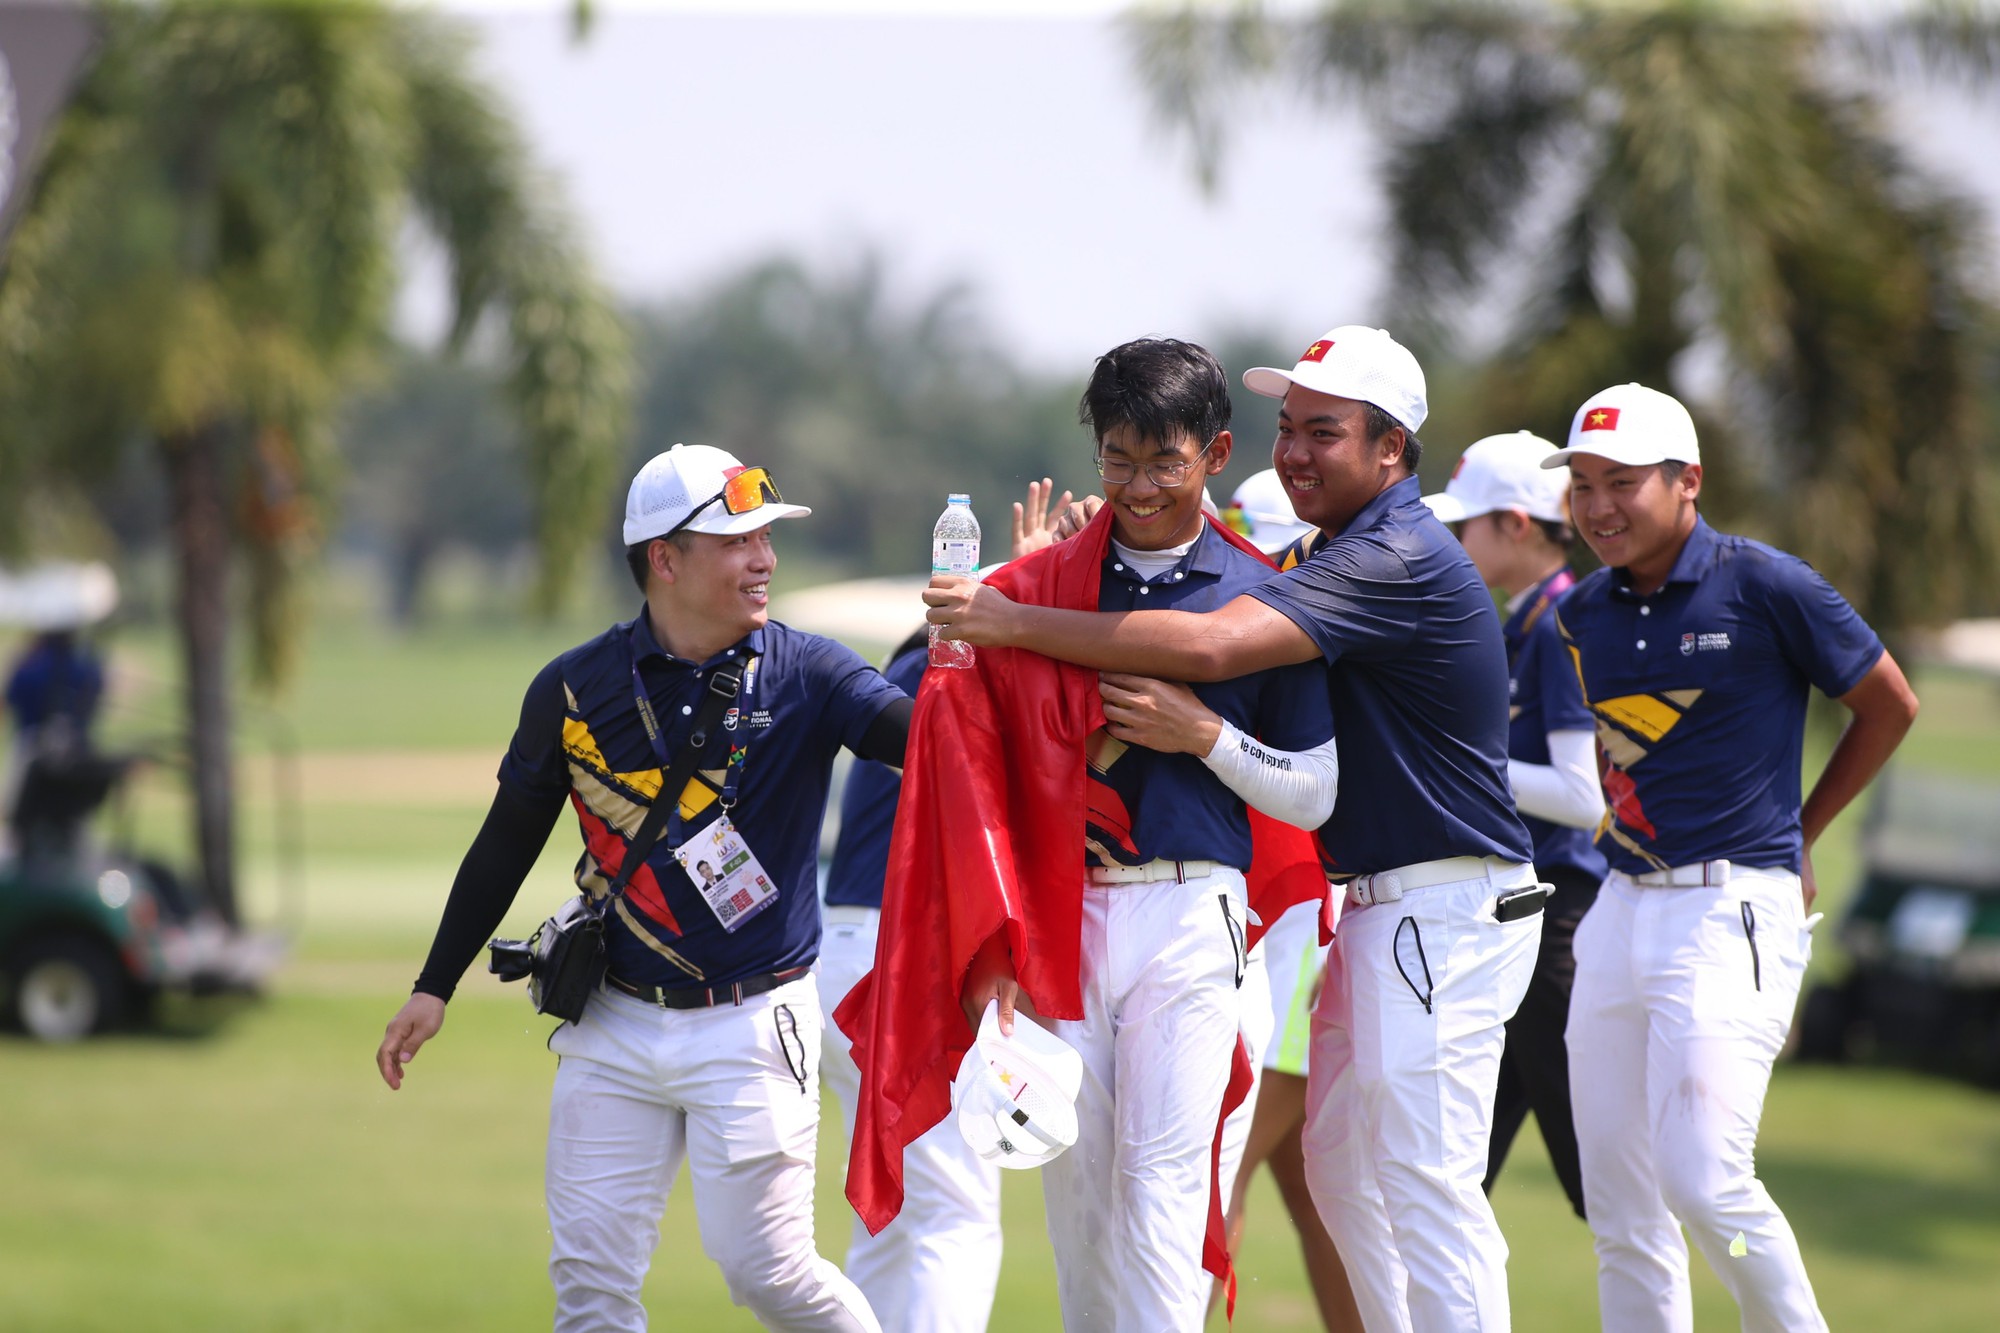 VĐV 15 tuổi Lê Khánh Hưng thi đấu xuất sắc, giành HCV SEA Games lịch sử cho golf Việt Nam - Ảnh 5.